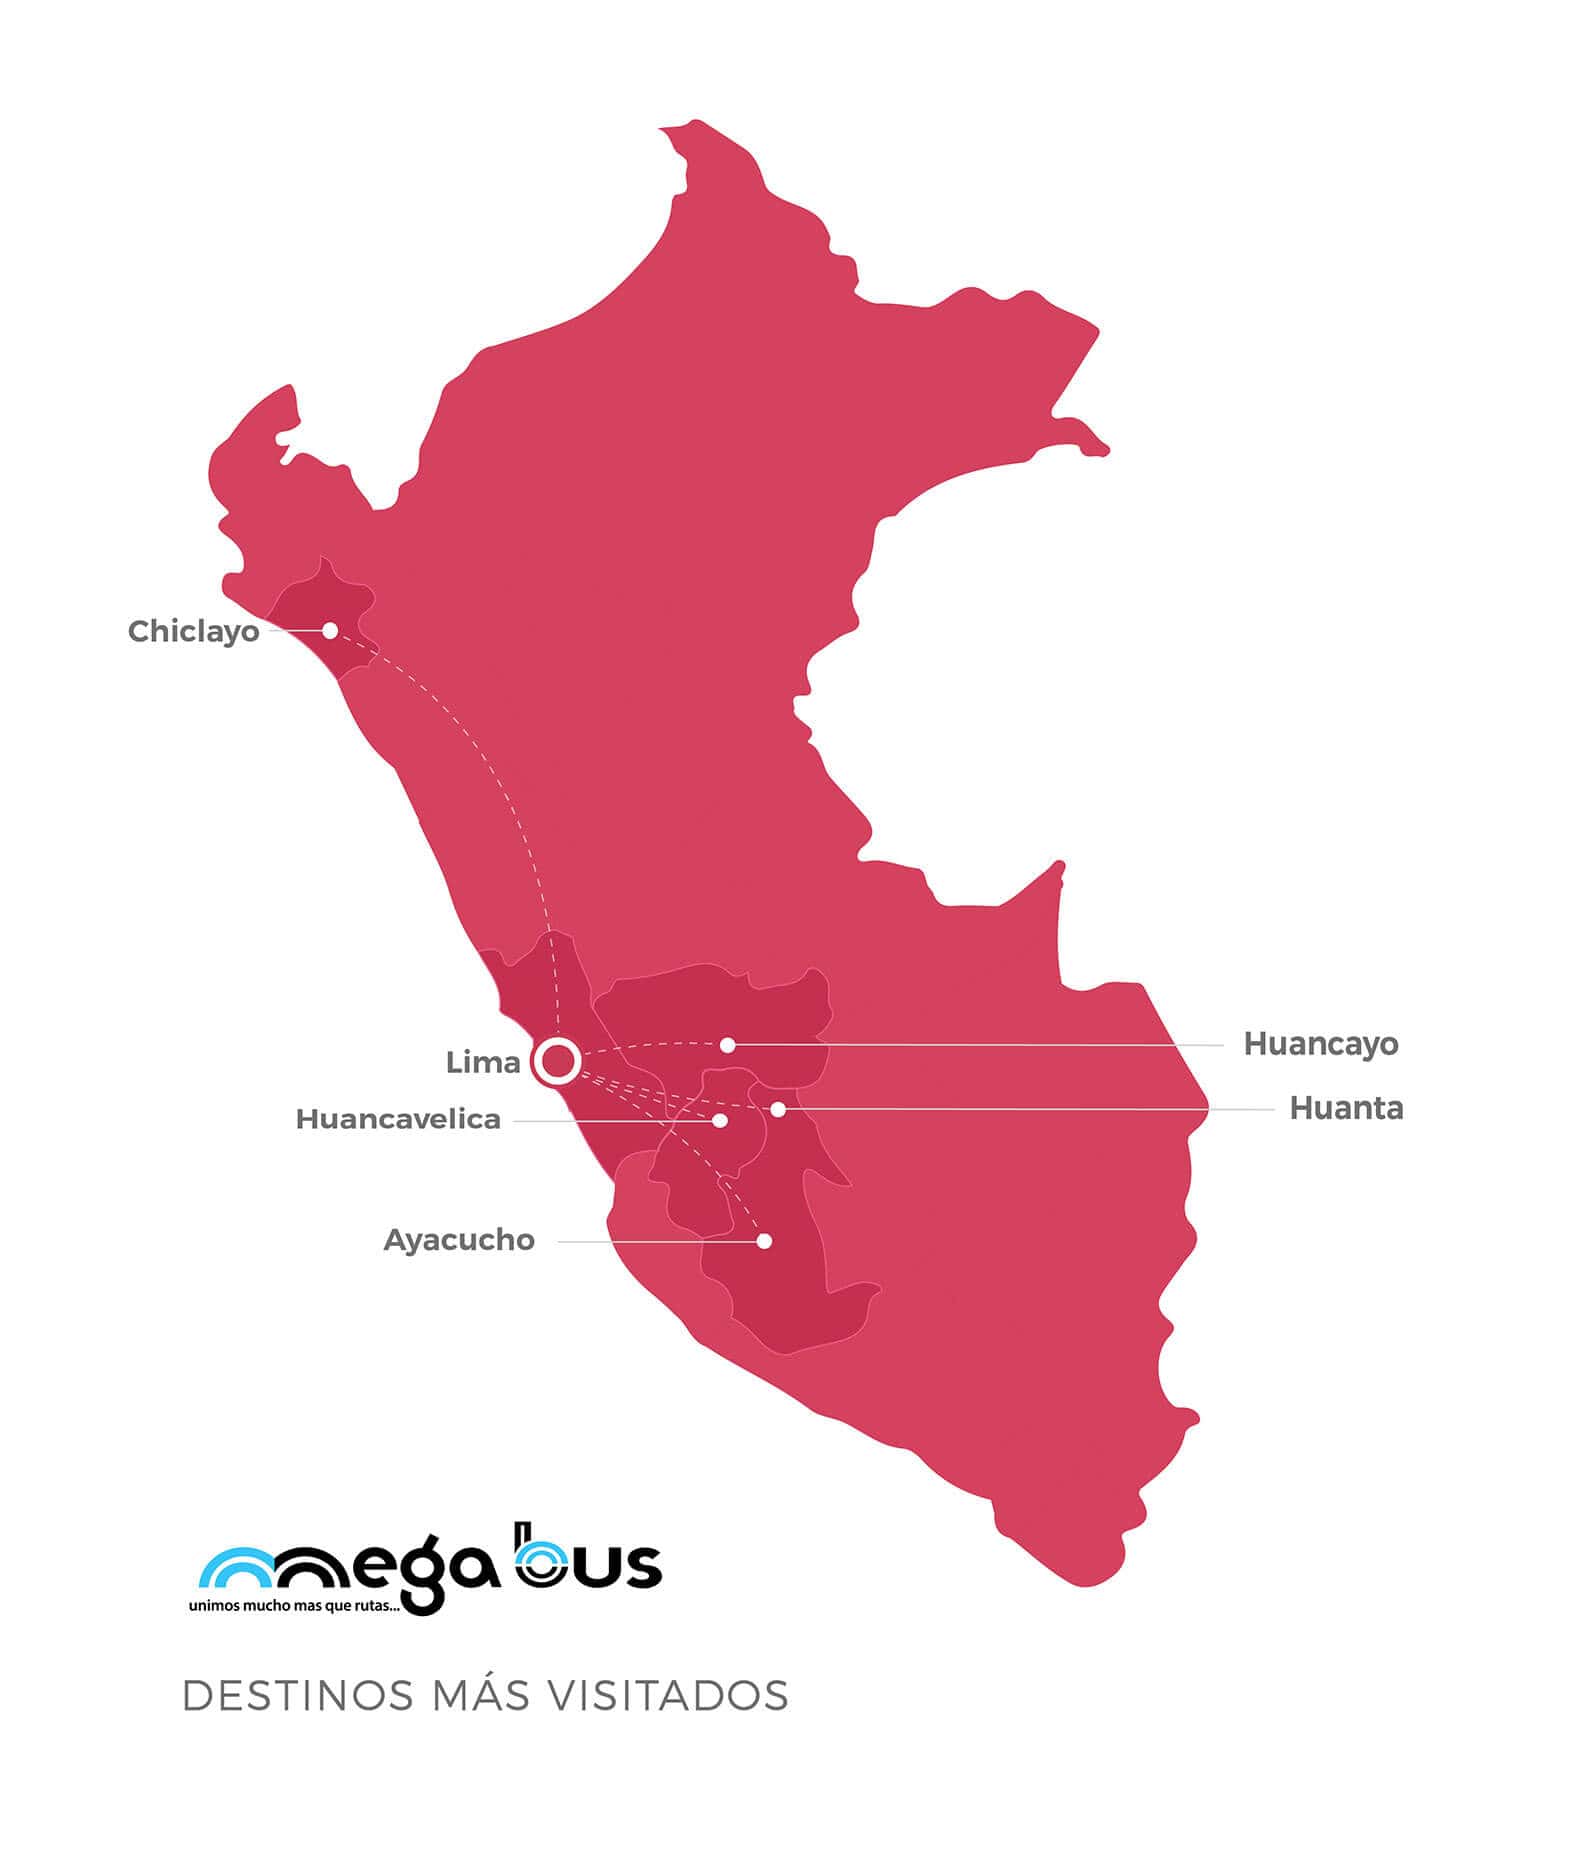 Megabus destinations